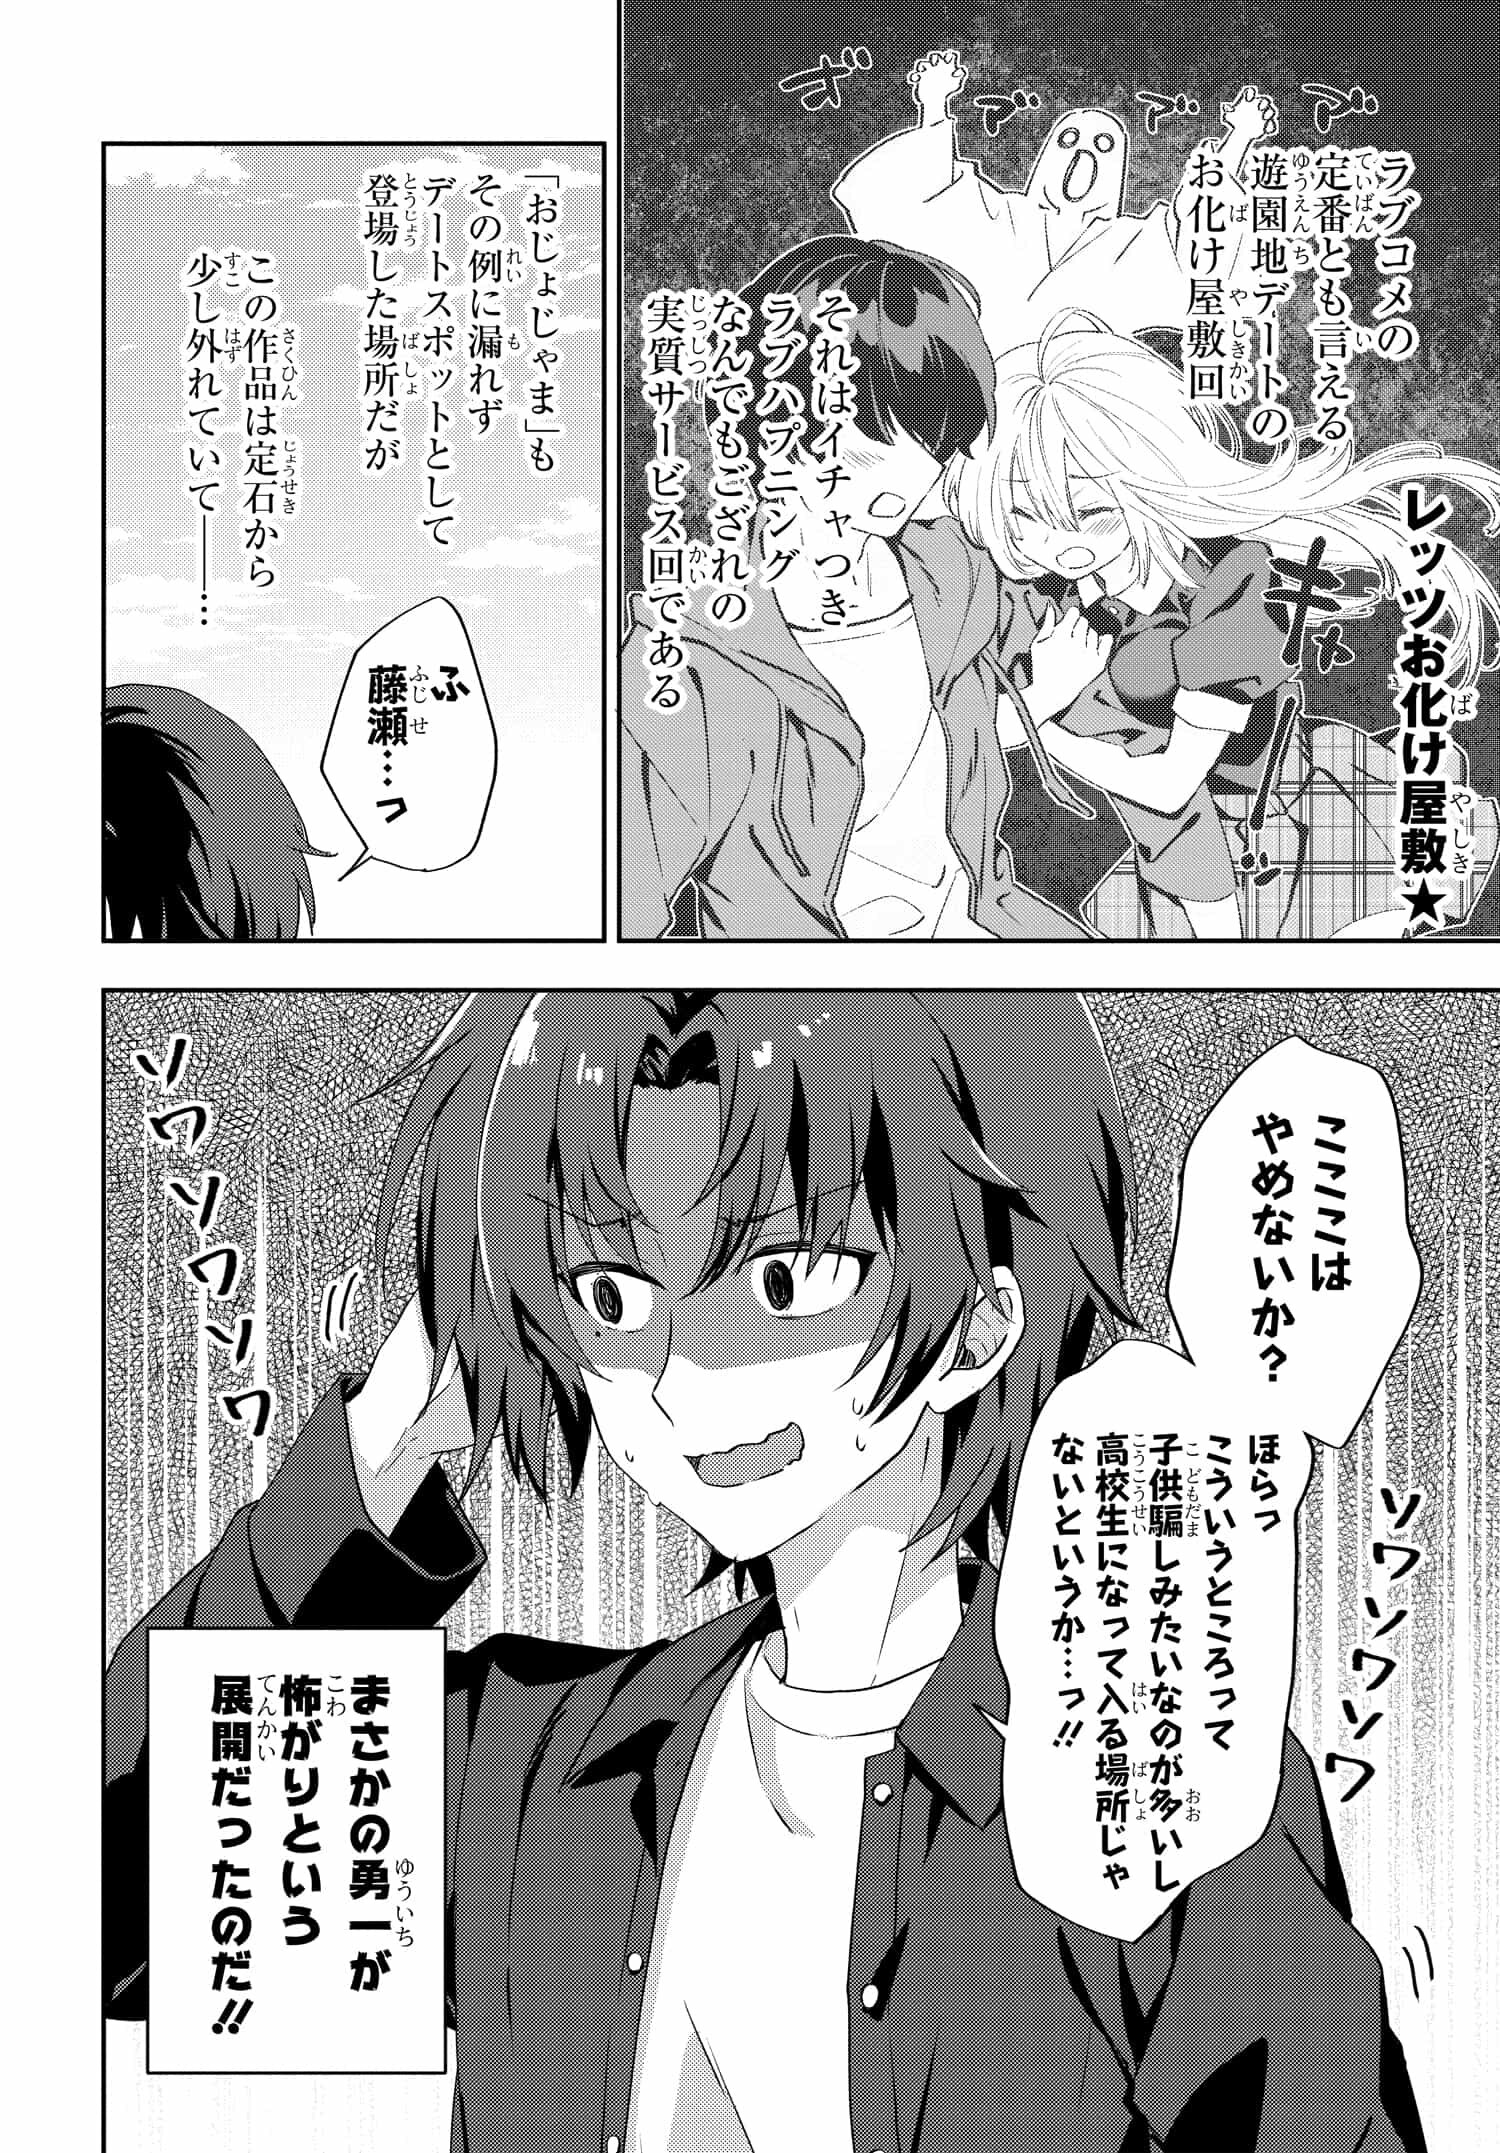 Romcom Manga ni Haitte Shimatta no de, Oshi no Make Heroine wo Zenryoku de Shiawase ni suru - Chapter 7.2 - Page 1